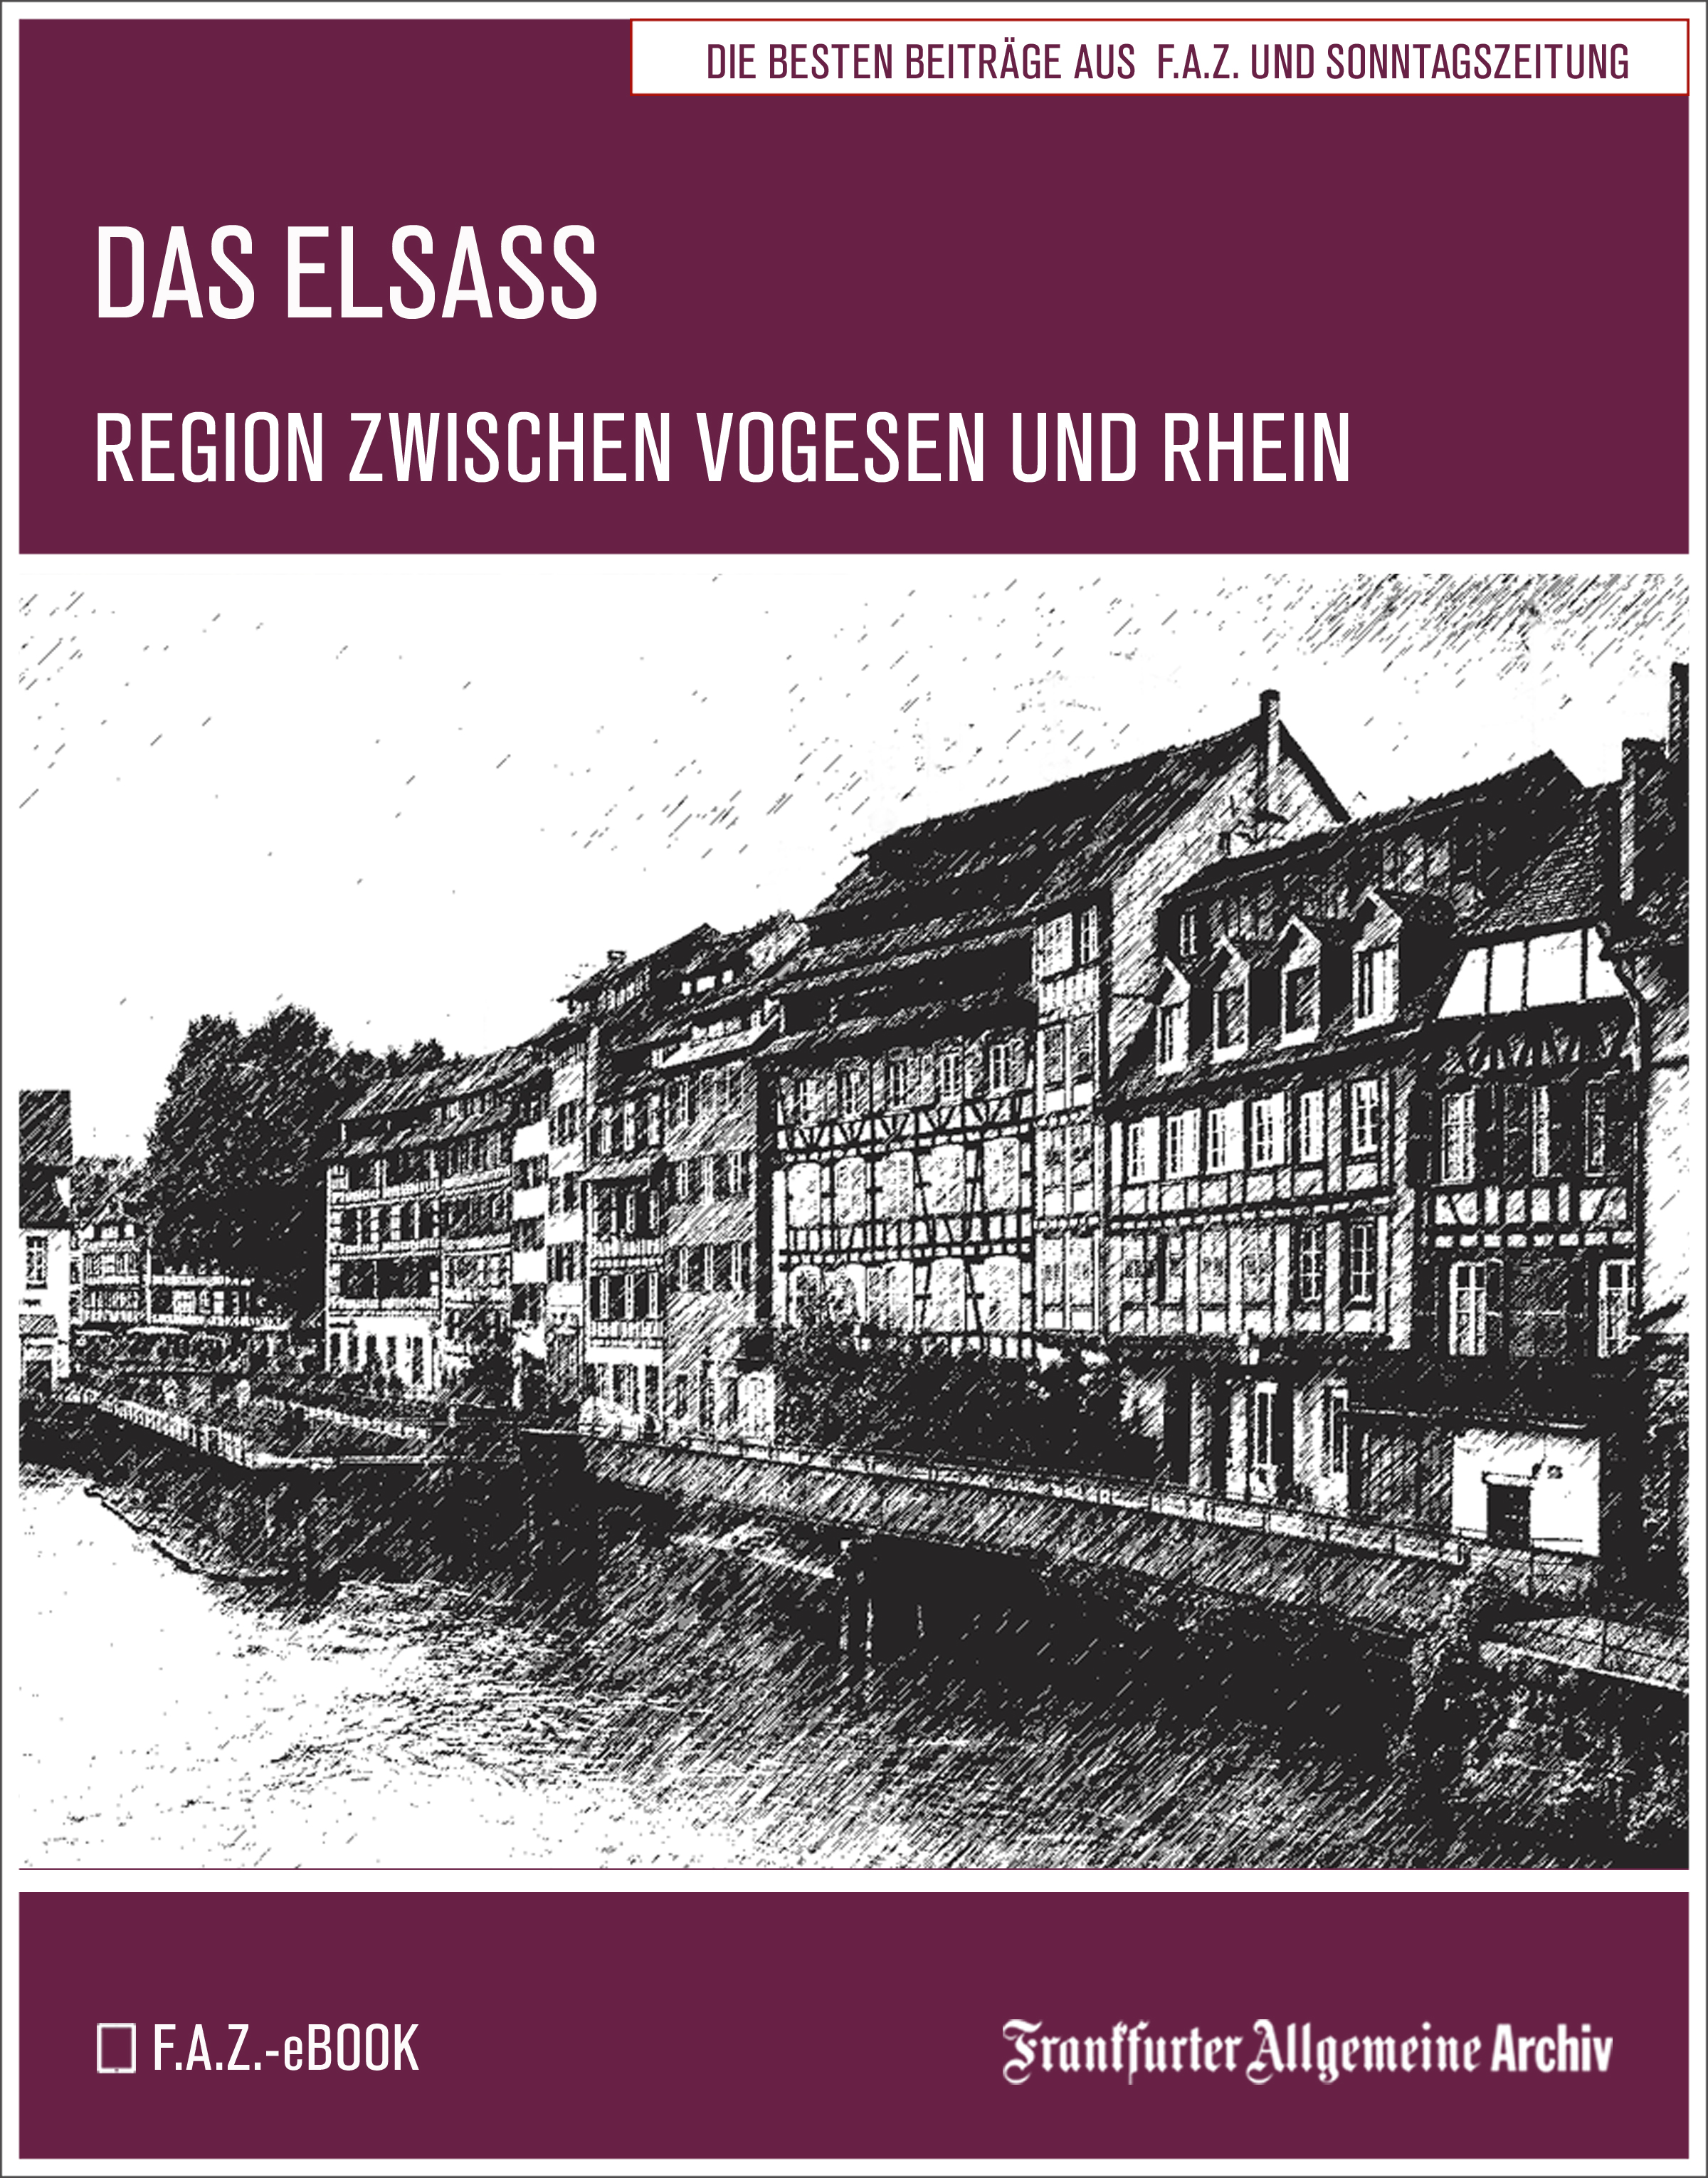 Frankfurter Allgemeine Archiv Das Elsass